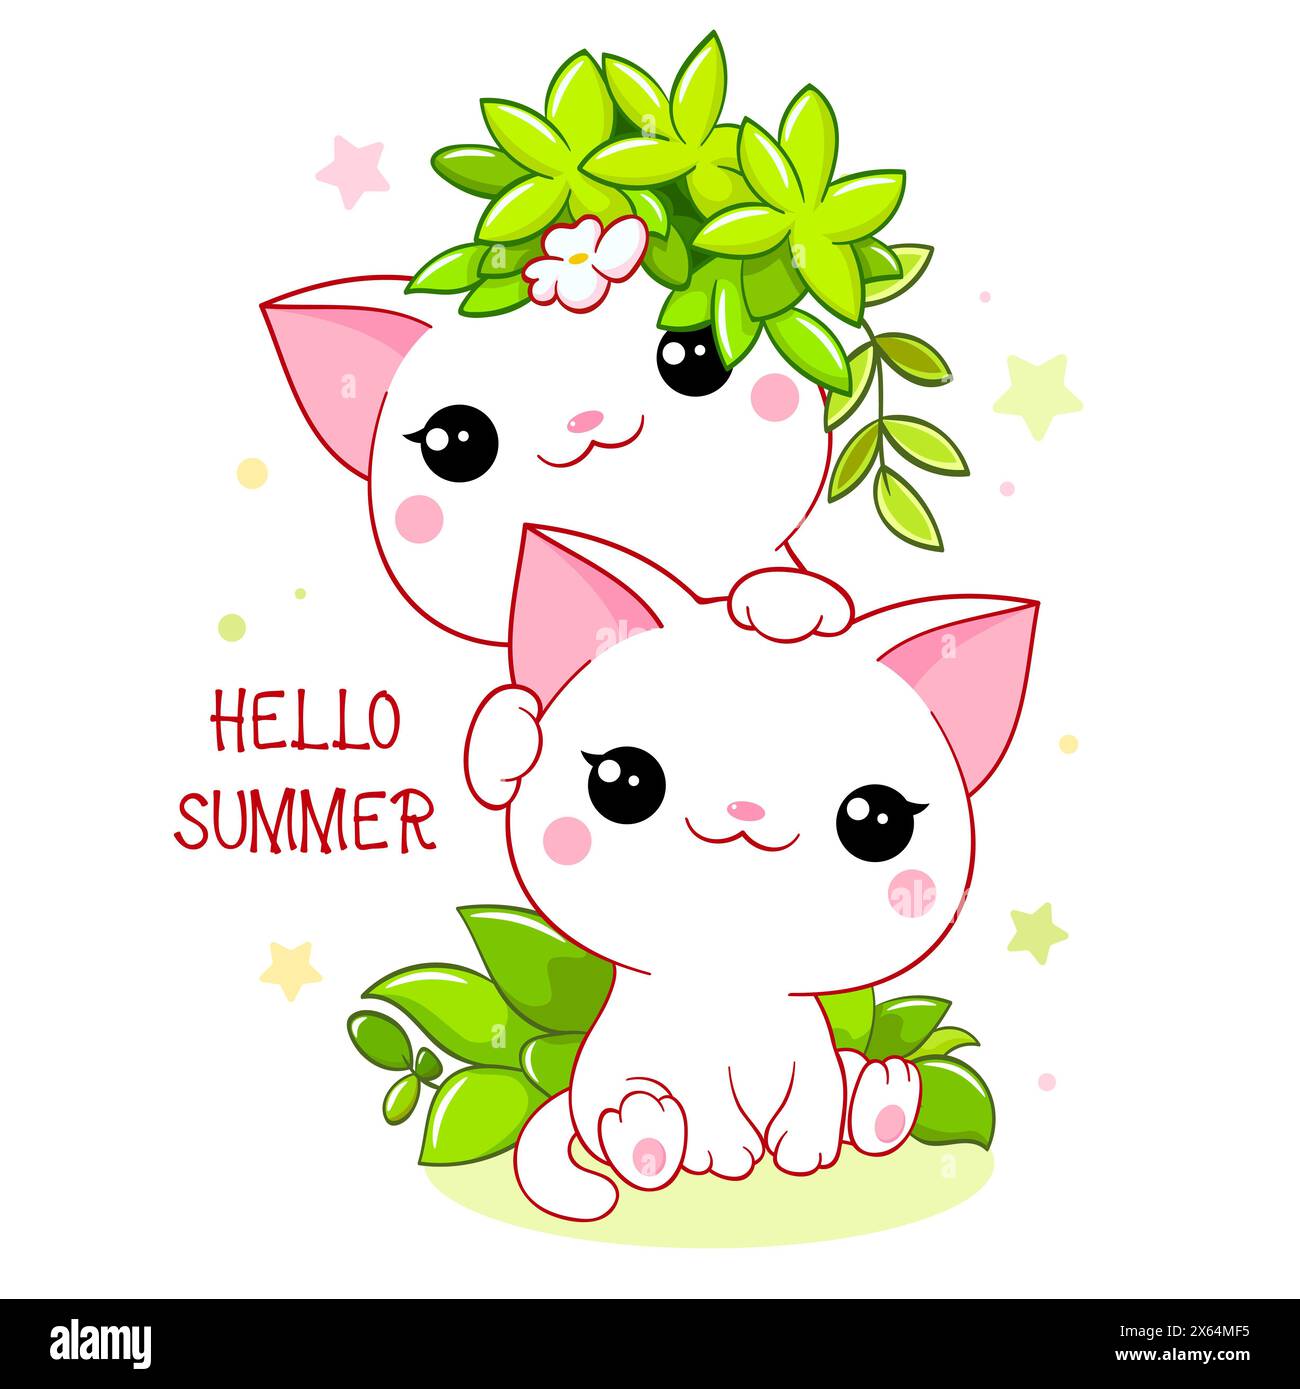 Carte de saison mignonne en style kawaii. Deux adorables petits chats aux feuilles vertes. Inscription Bonjour l'été. Peut être utilisé pour l'impression de t-shirt, autocollants, greetin Banque D'Images